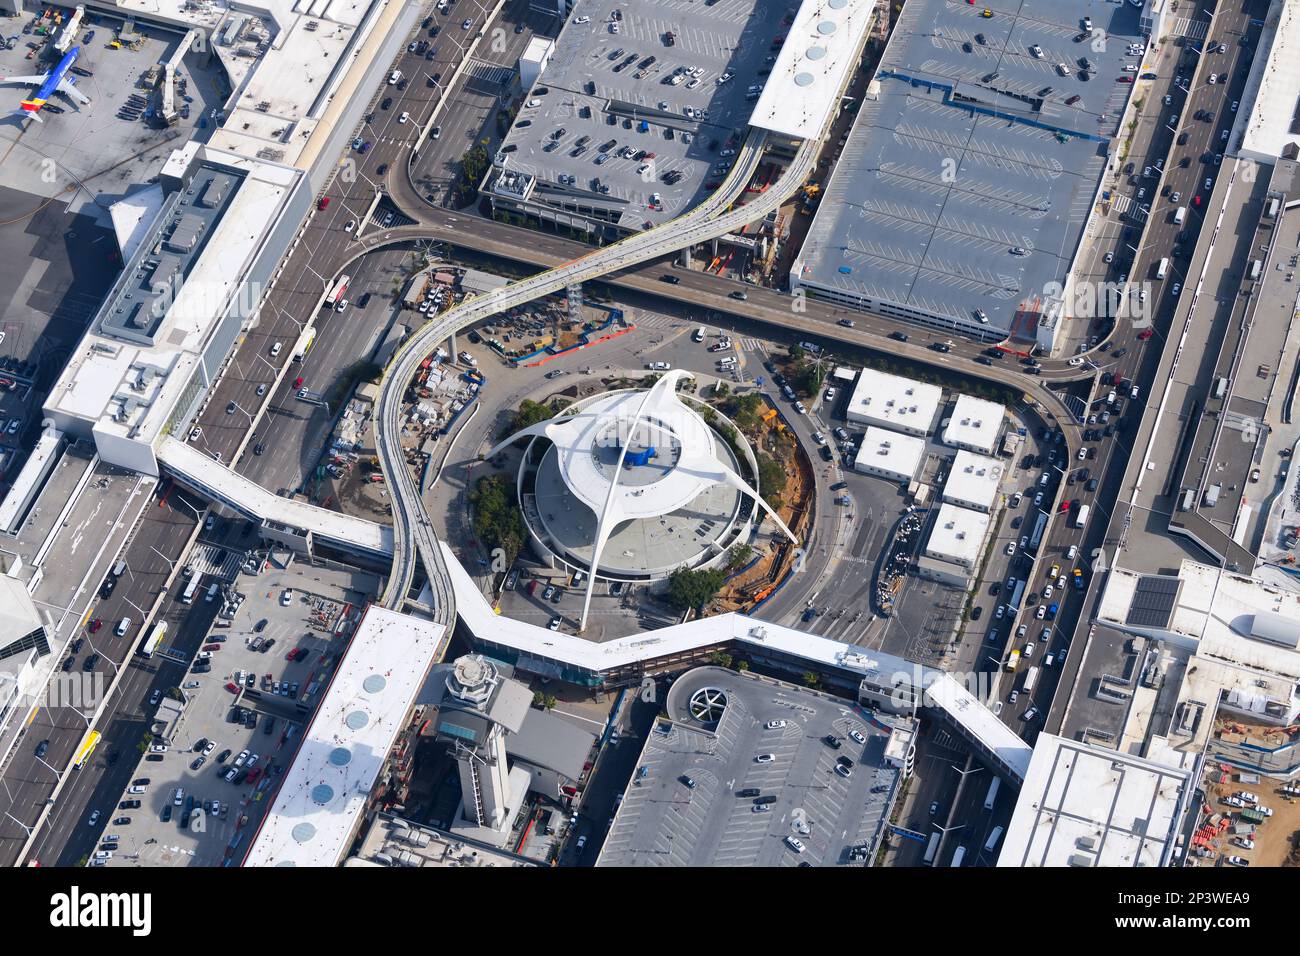 LAX Theme Building am LAX Airport. Ikonische Weltraumaltersstruktur mit PopulXE-Einfluss am Flughafen LAX. Googie-Architektur in Los Angeles. Stockfoto